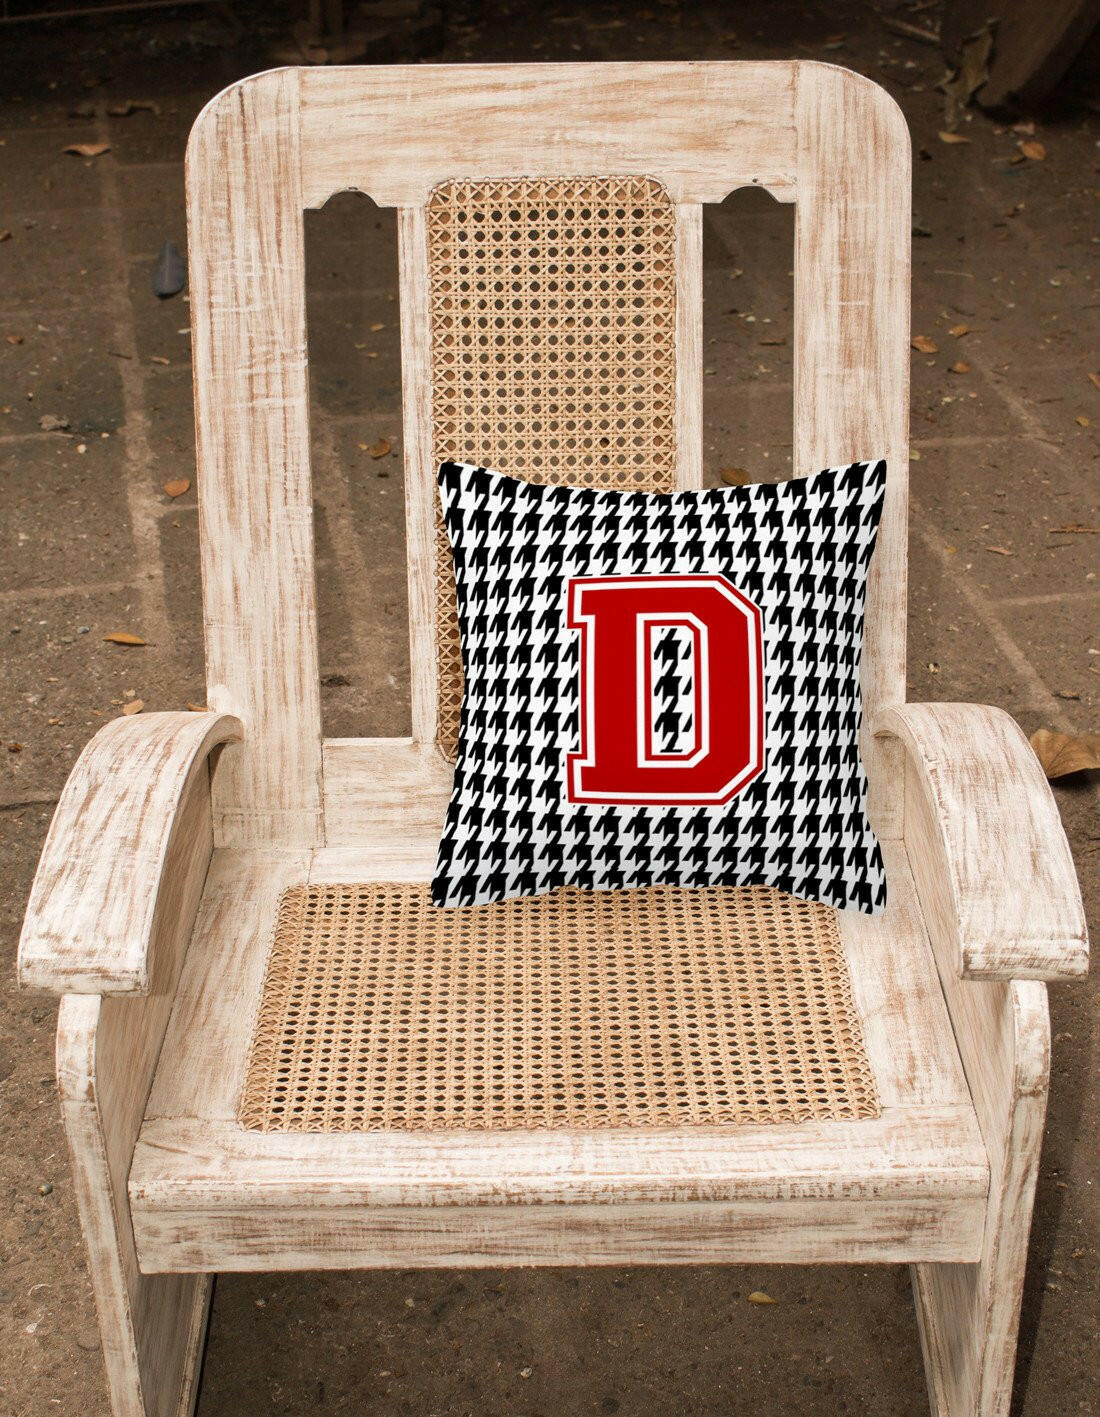 Monogram - Initial D Houndstooth Decorative   Canvas Fabric Pillow CJ1021 - the-store.com